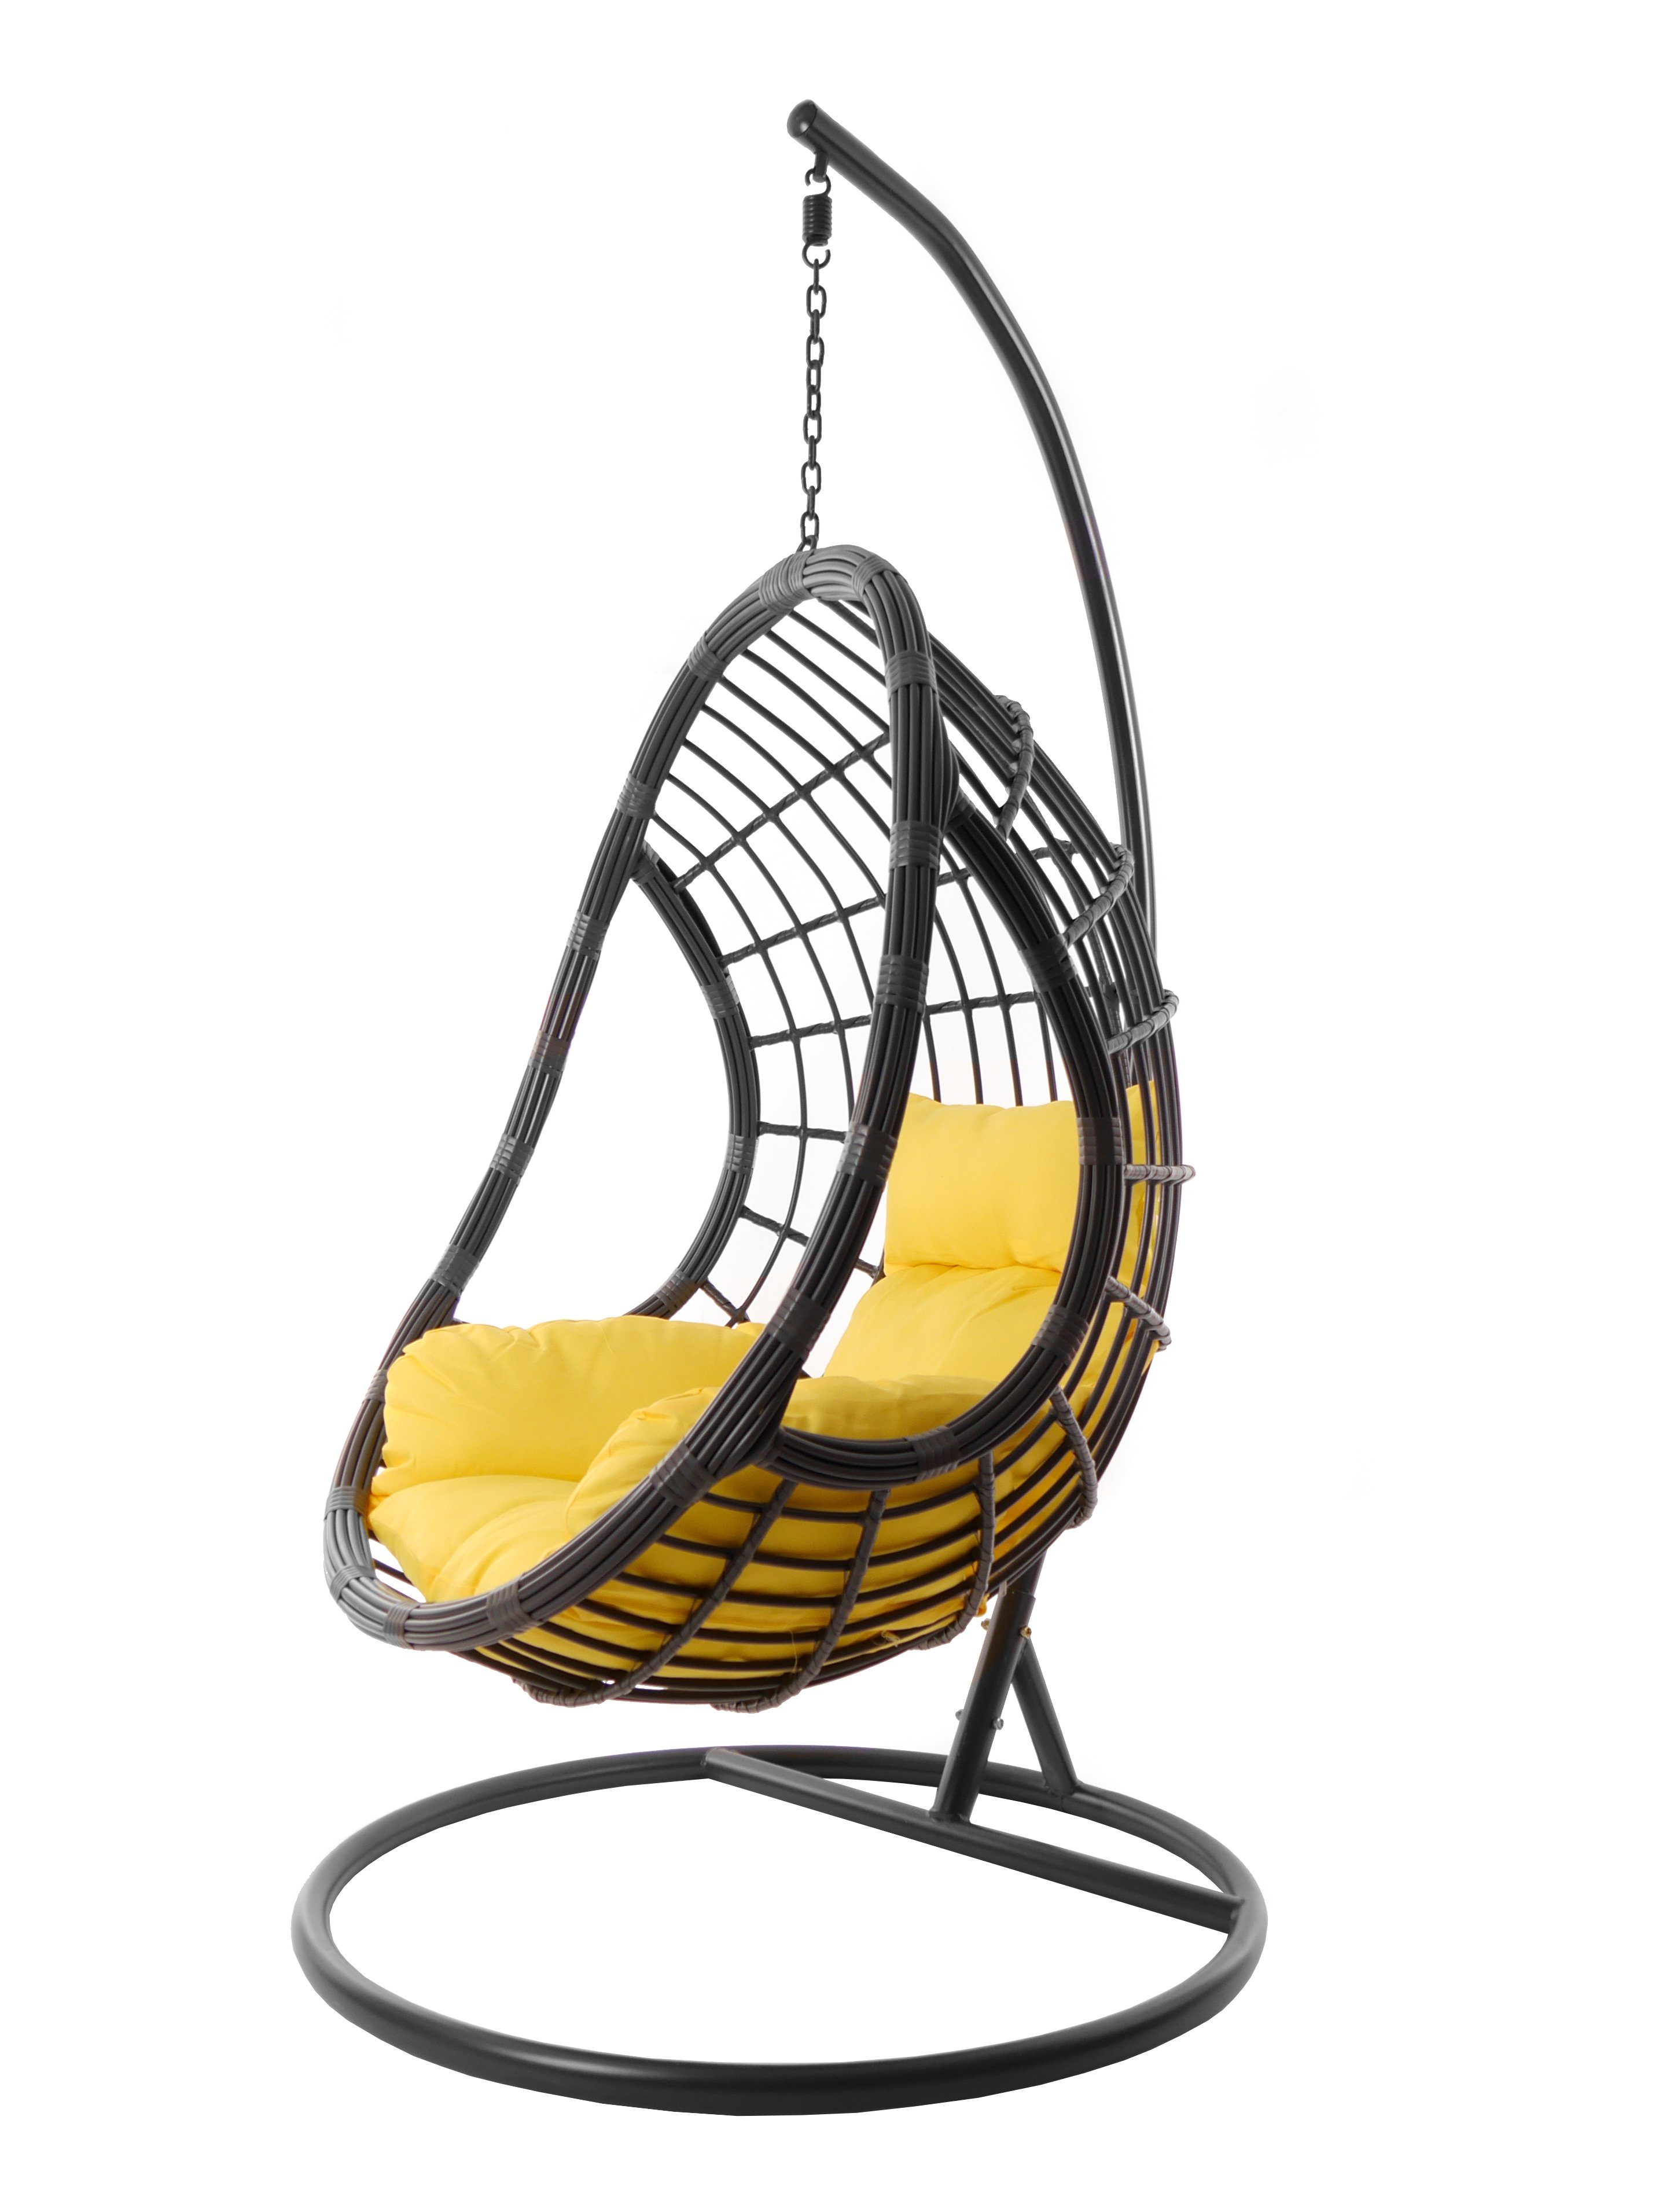 KIDEO Hängesessel Hängesessel PALMANOVA (2200 in mit Kissen, grau, gelb Nest-Kissen moderne Loungemöbel pineapple) und Gestell Hängestuhl grau, farbige